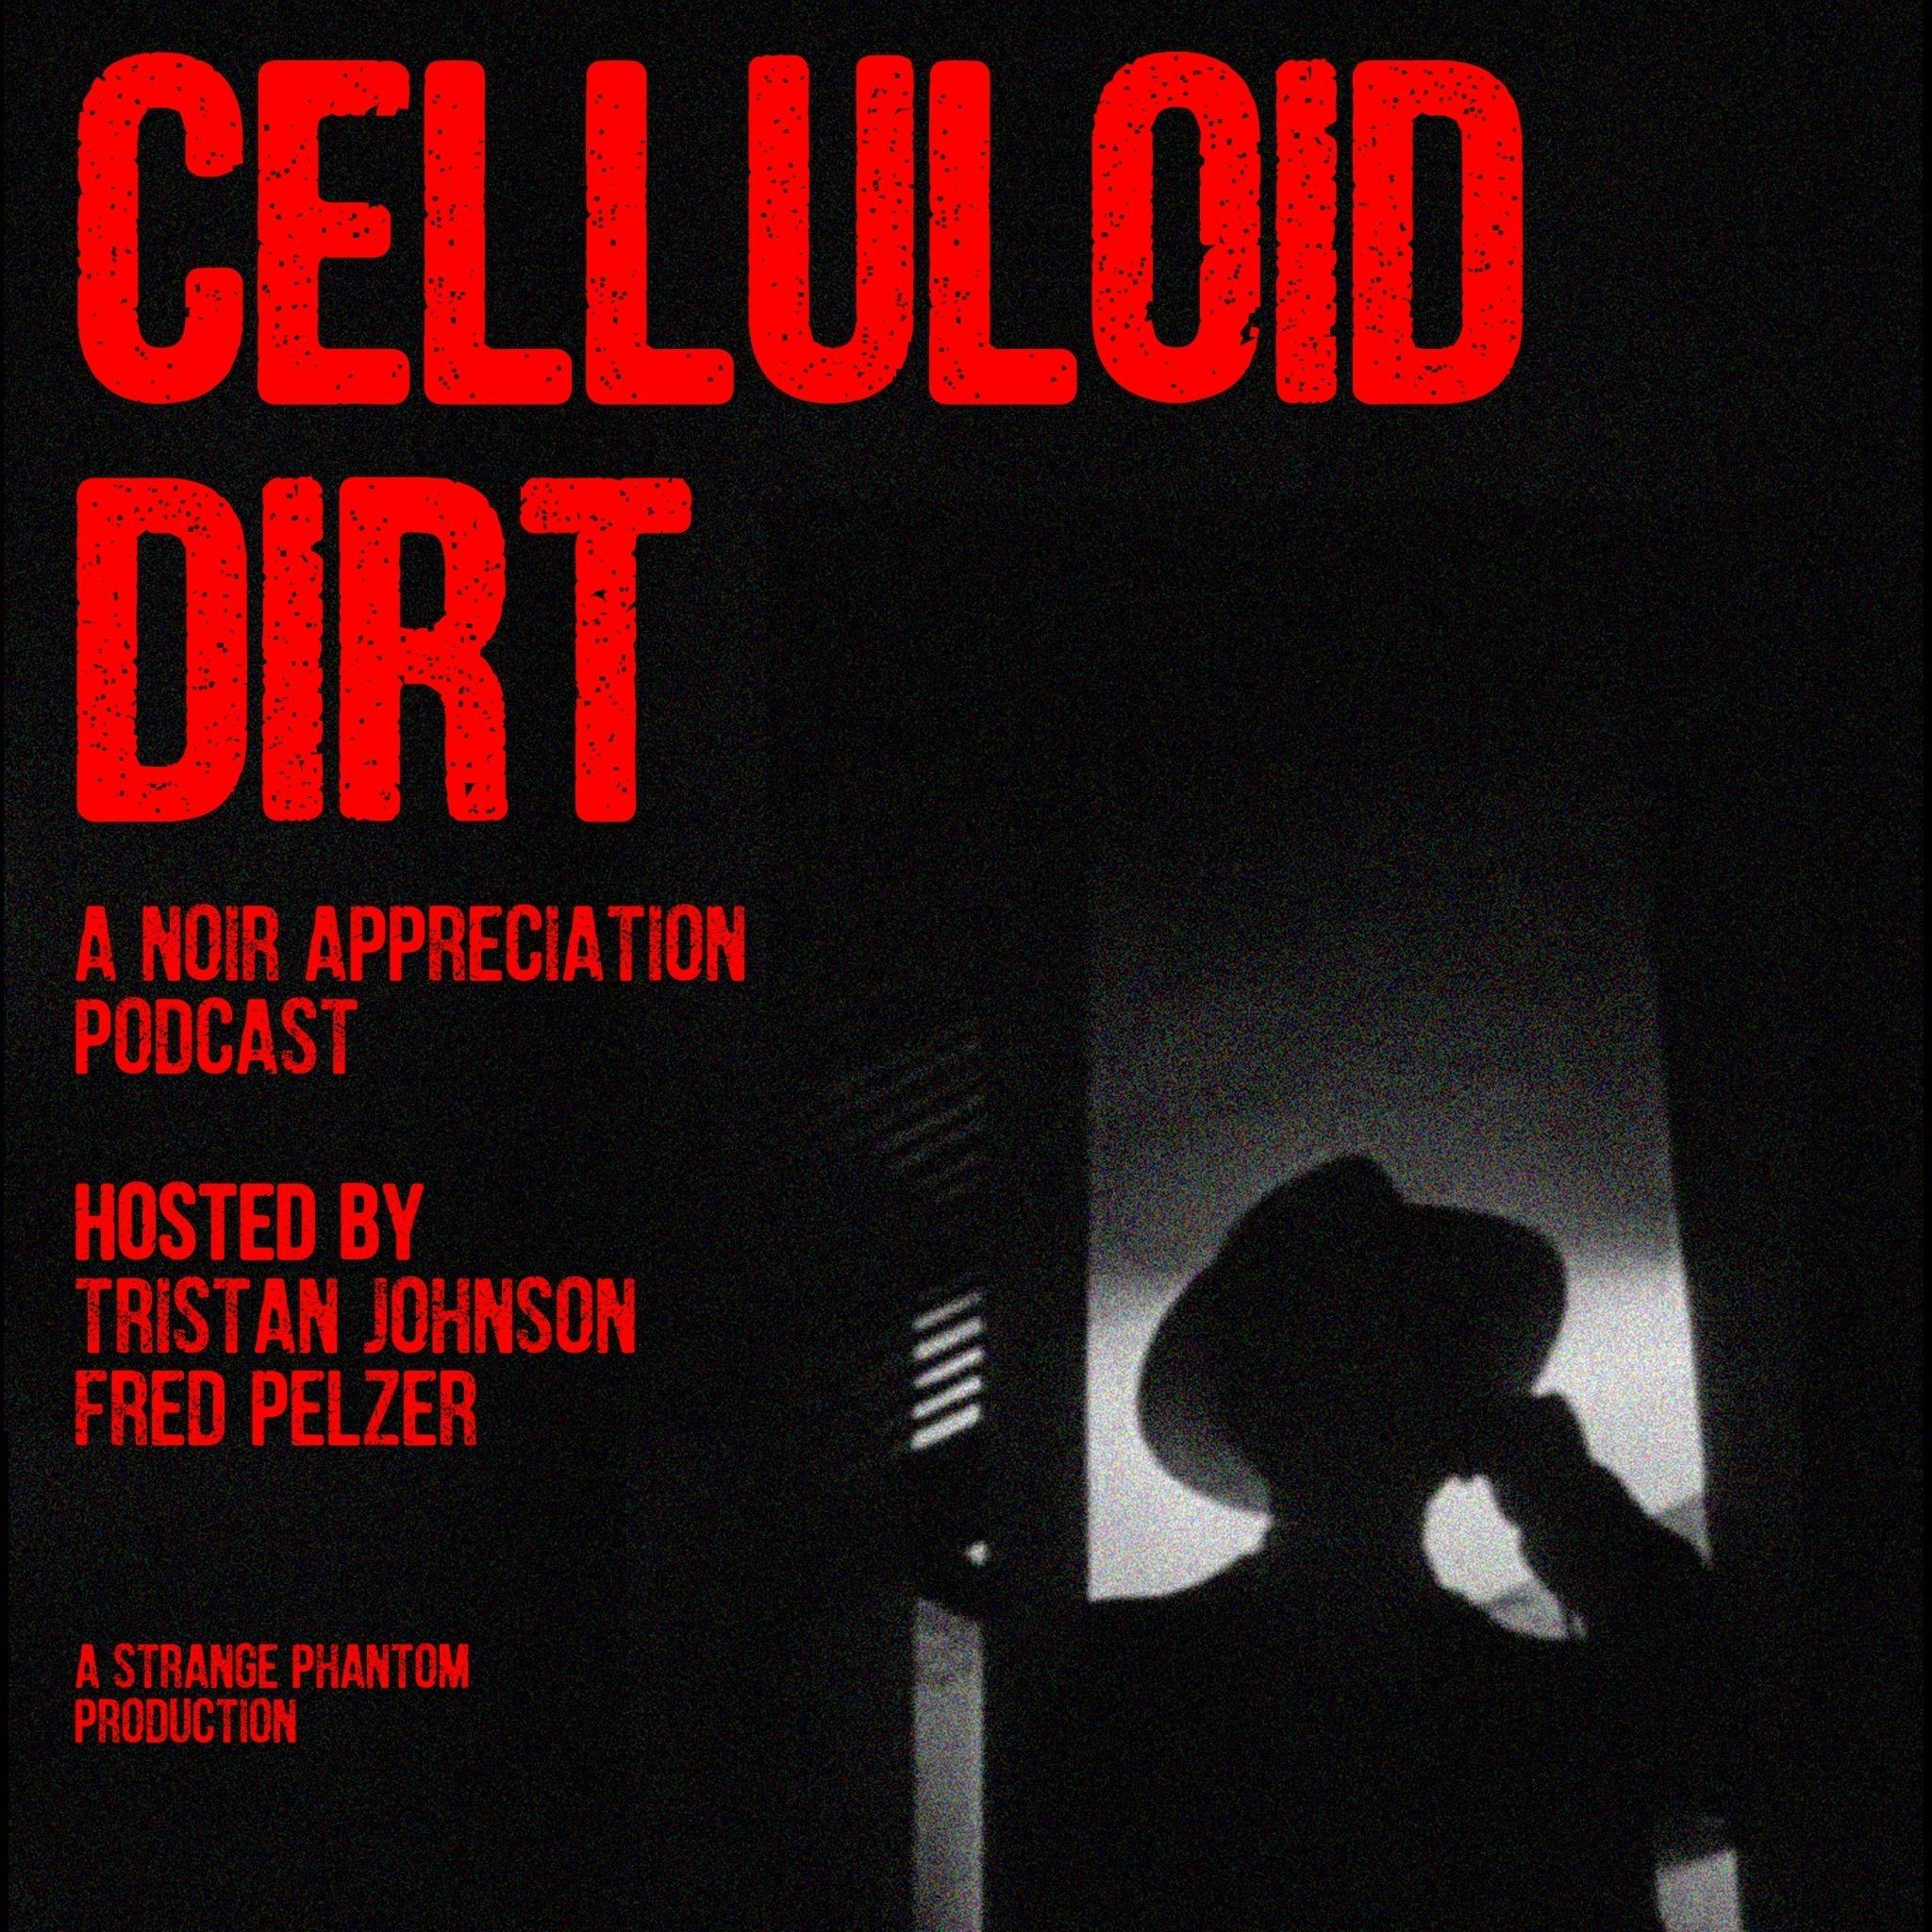 Celluloid Dirt